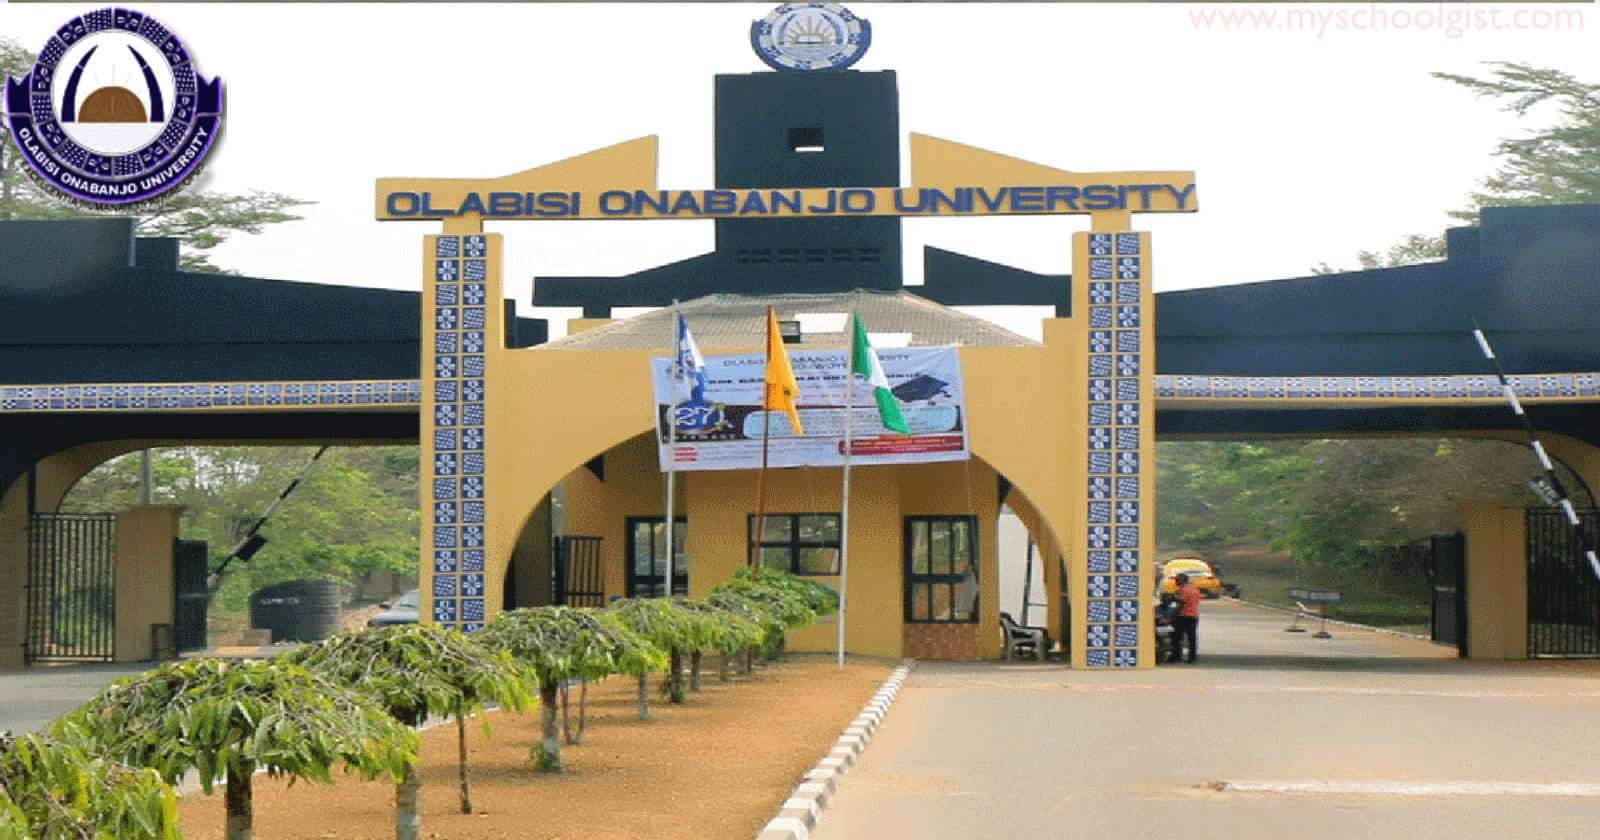 Olabisi Onabanjo University (OOU) Admission List